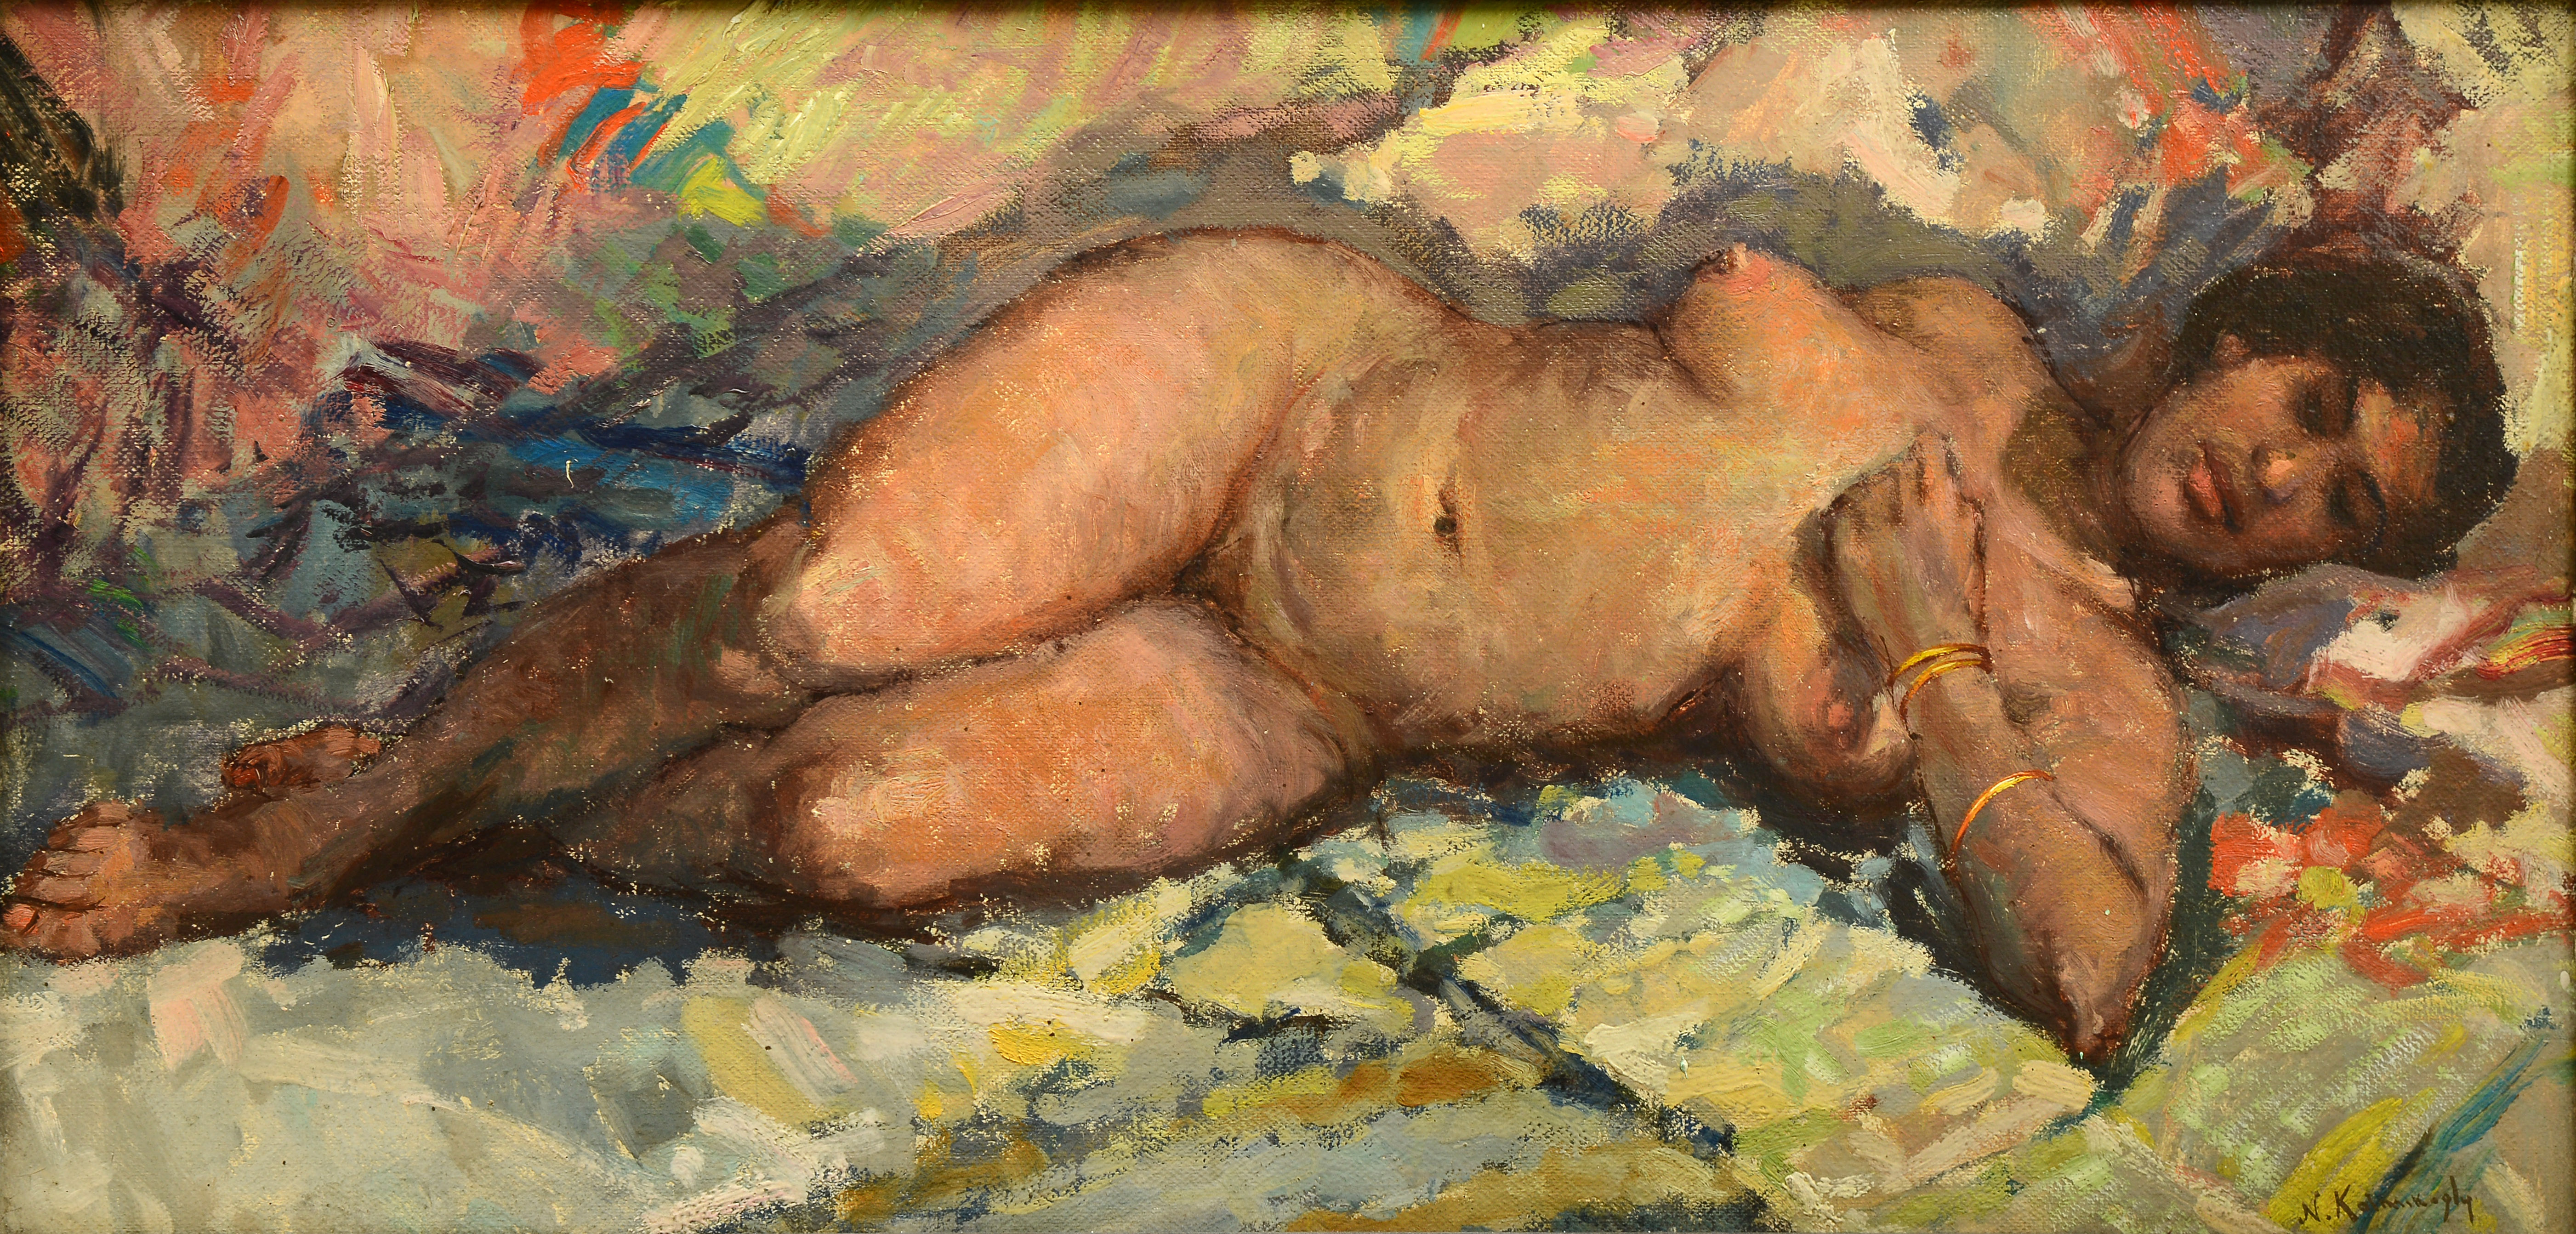 İsimsiz- Untitled, Duralit üzerine yağlıboya- Oil on duralite, 45x95 cm